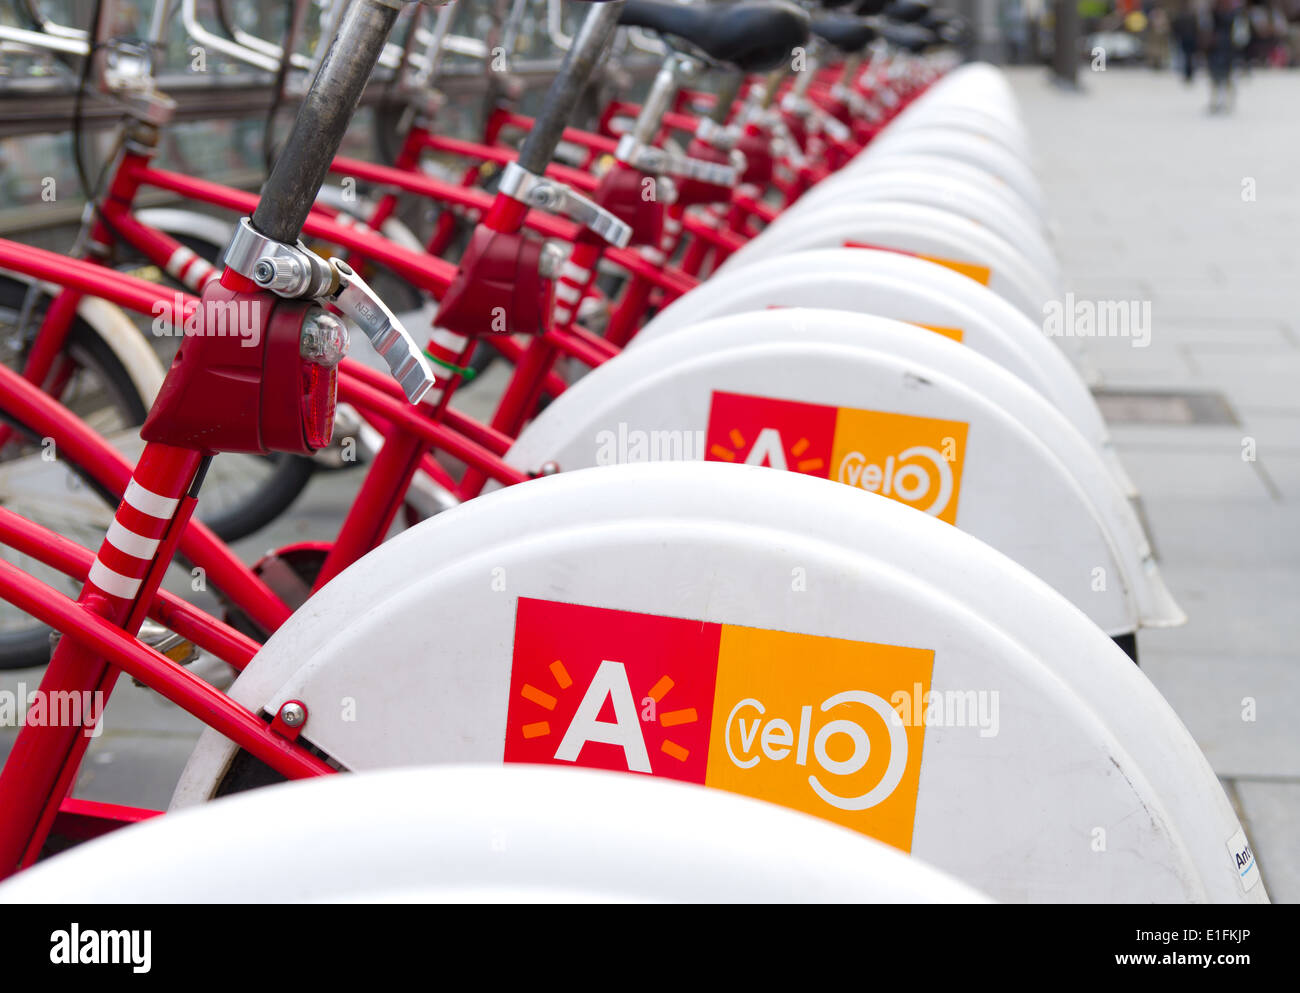 Con 1000 biciclette e 80 stazioni, Velo è tra i più grandi bike sharing sistemi di tutto il mondo. Foto Stock